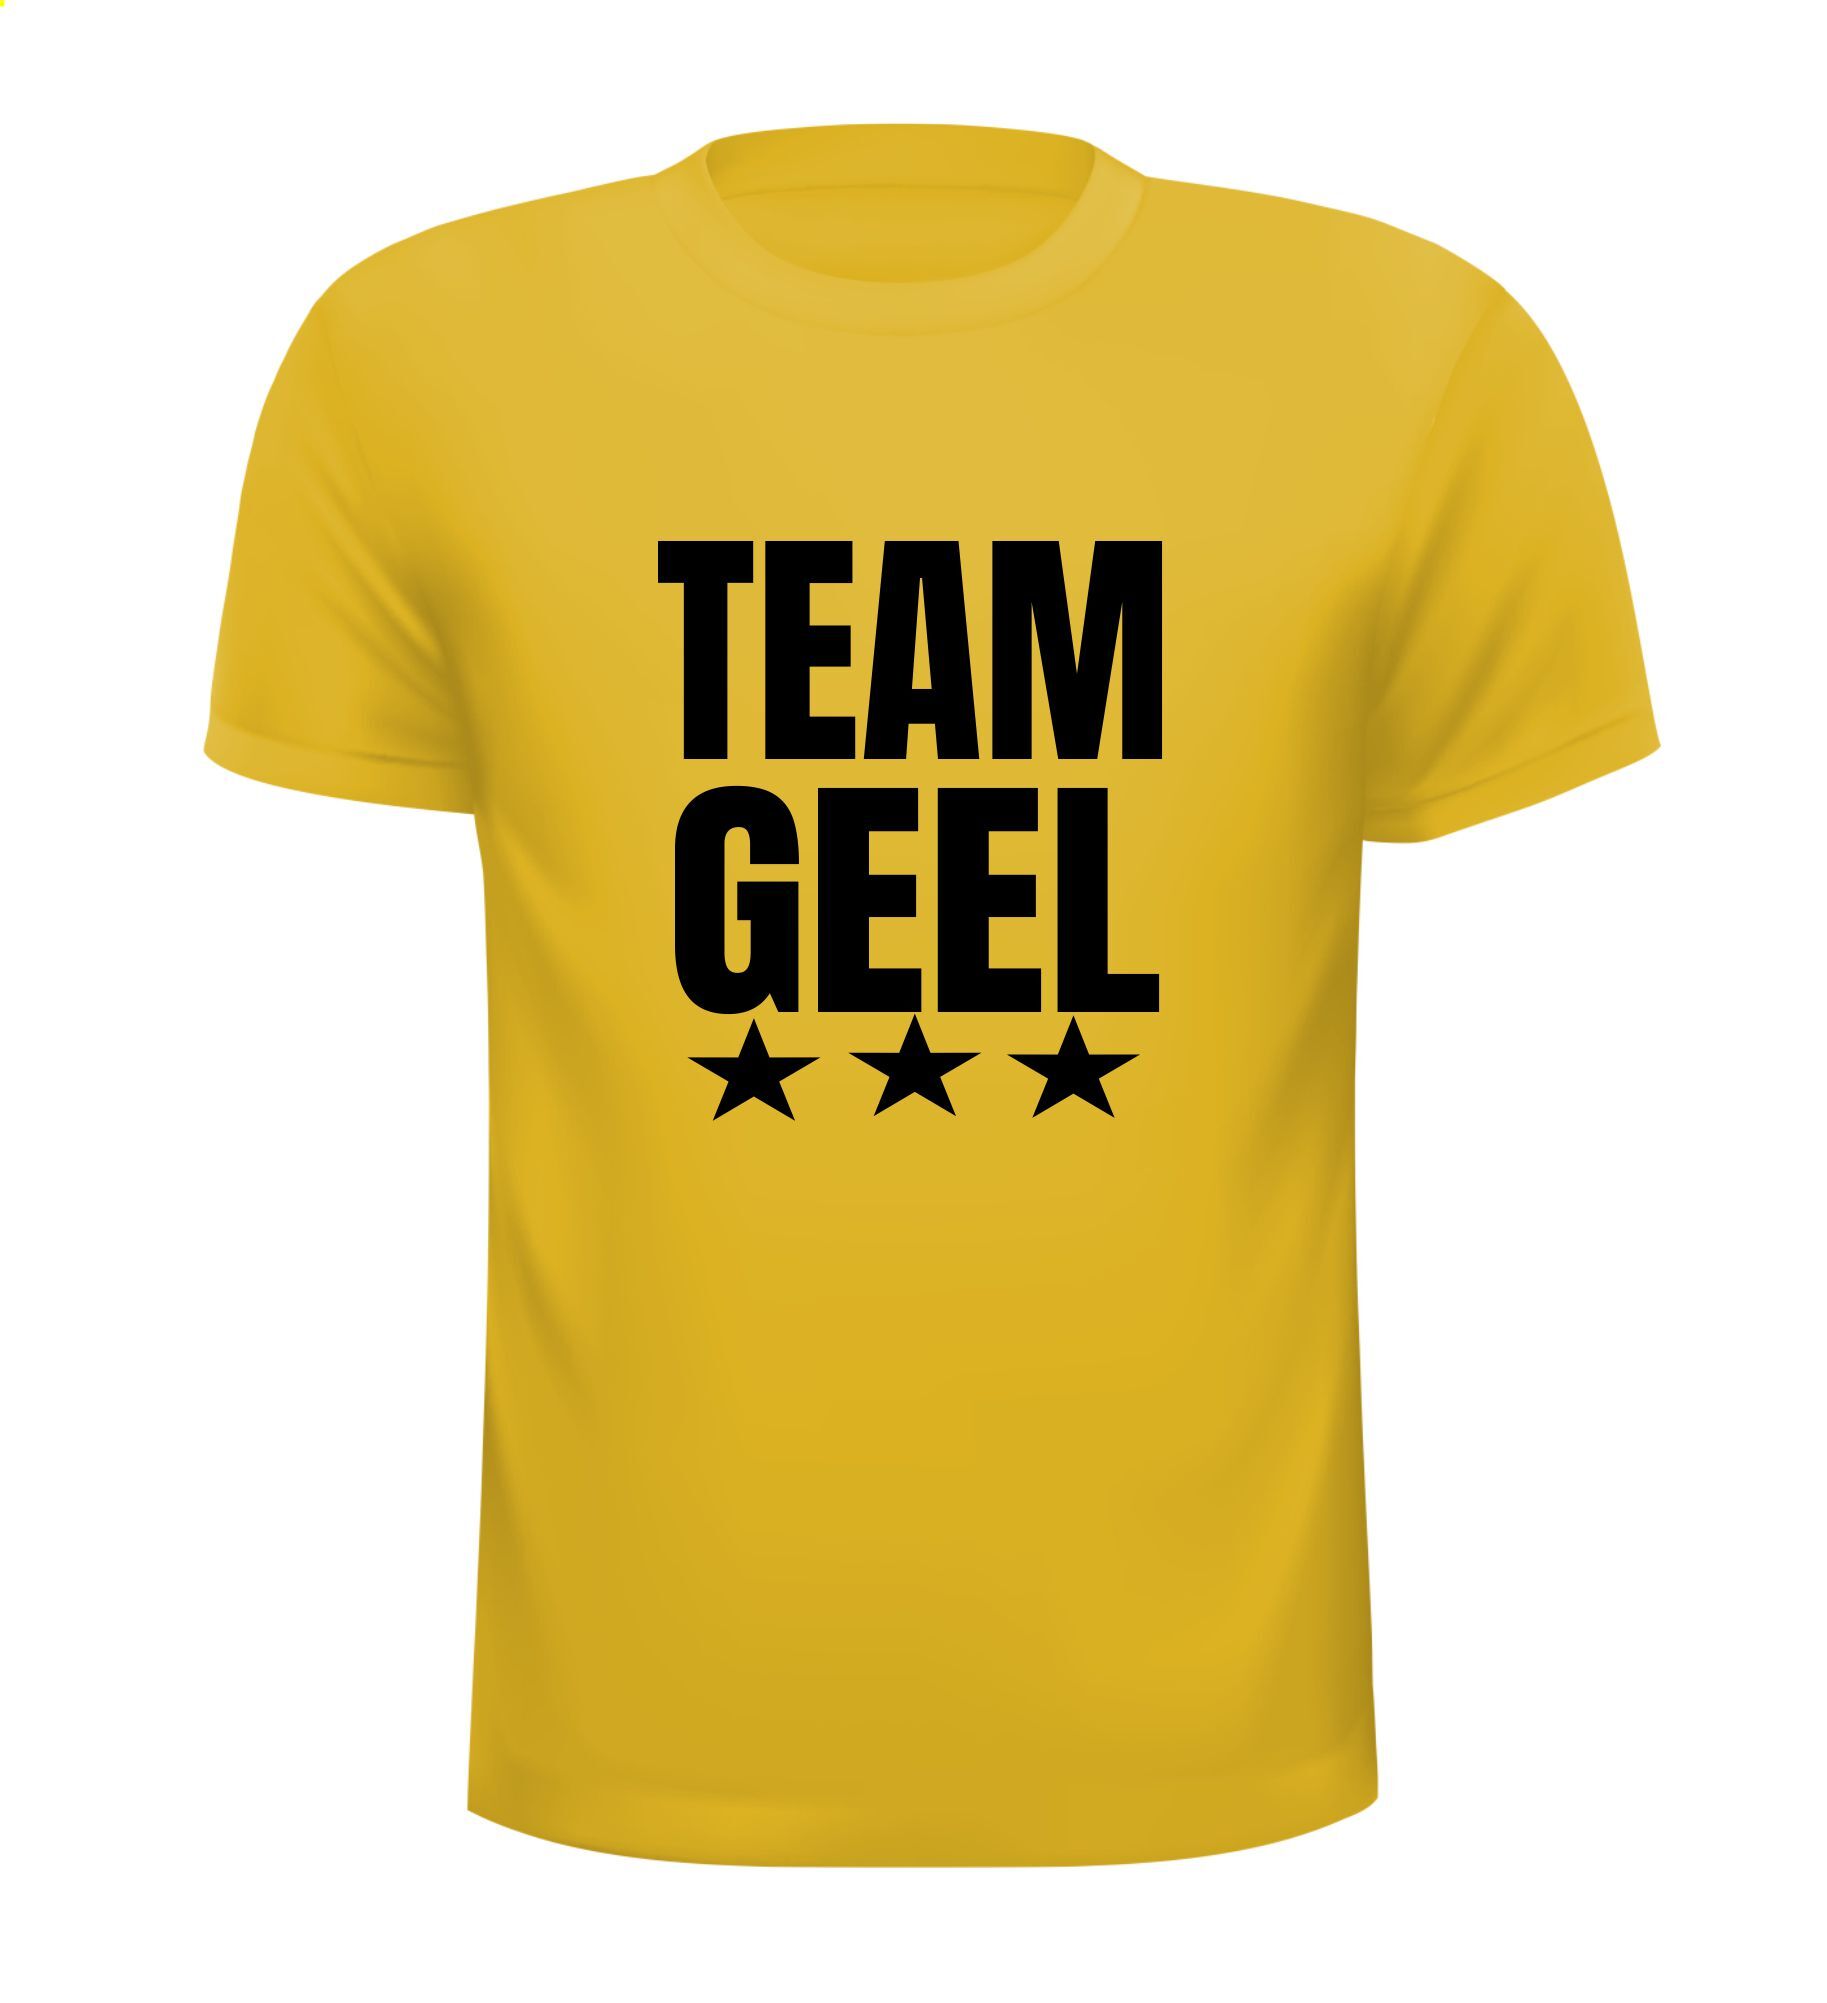 Shirtje voor het Gele Team. Team geel